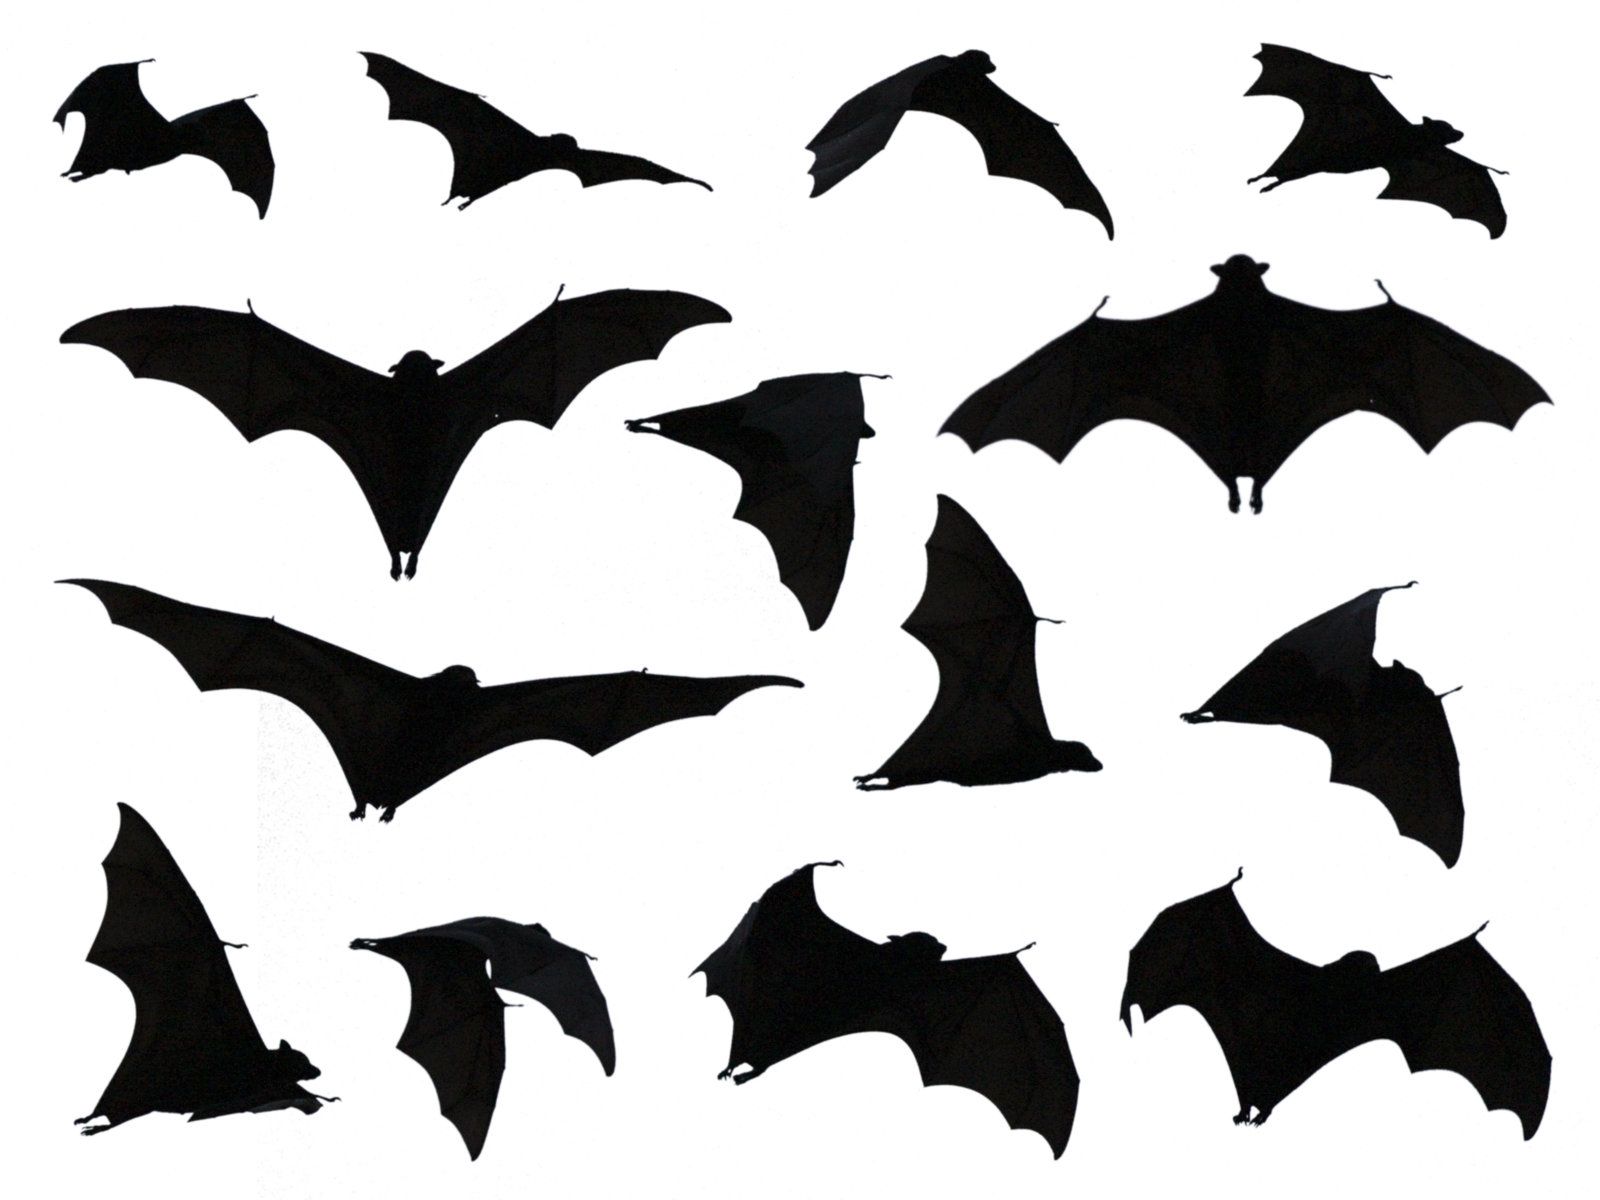 Silhouettes by laticis watercolor. Bats clipart fruit bat